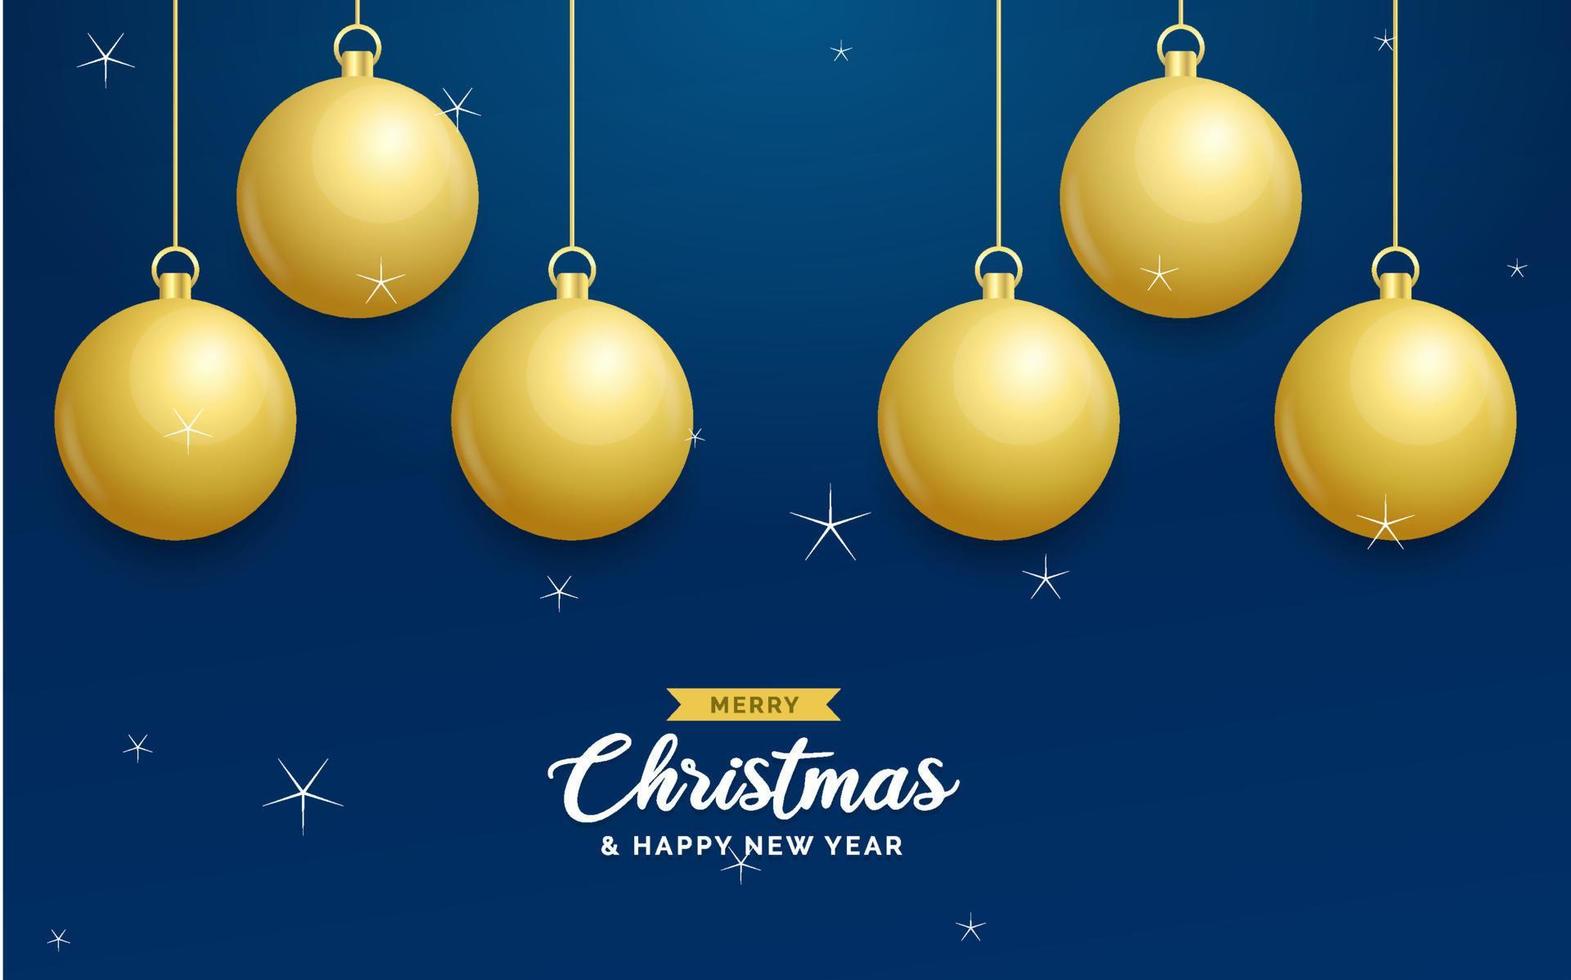 fondo azul de navidad con bolas doradas brillantes colgantes. tarjeta de felicitación de feliz navidad. cartel de vacaciones de navidad y año nuevo. banner web vector